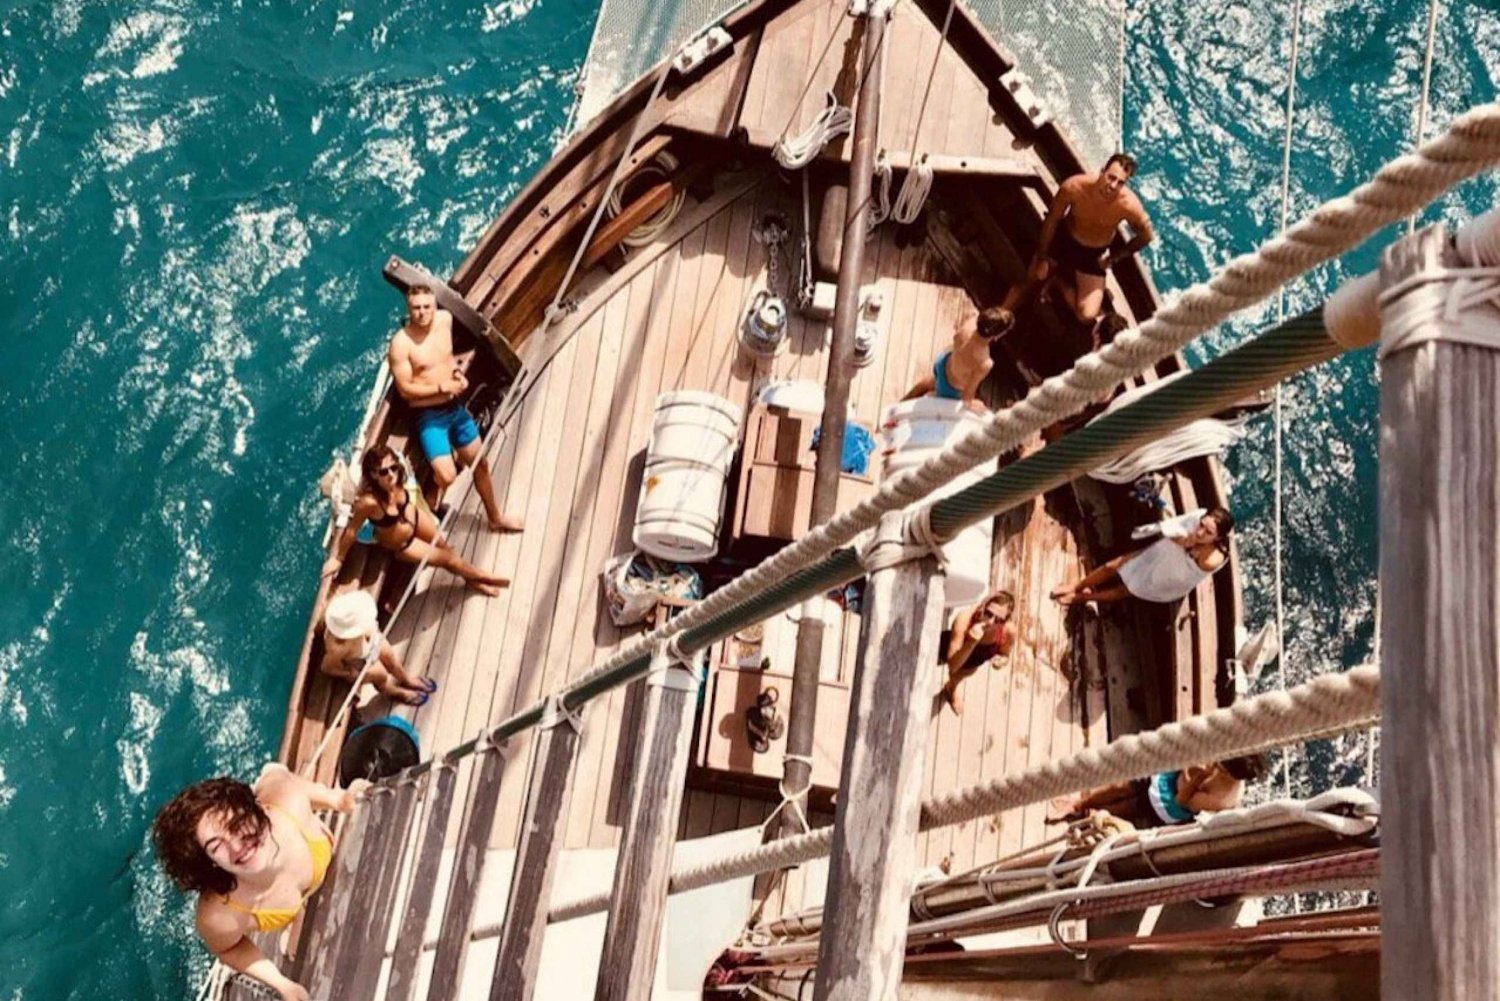 Palma de Mallorca: Wooden Sailboat Cruise with Barbecue Meal